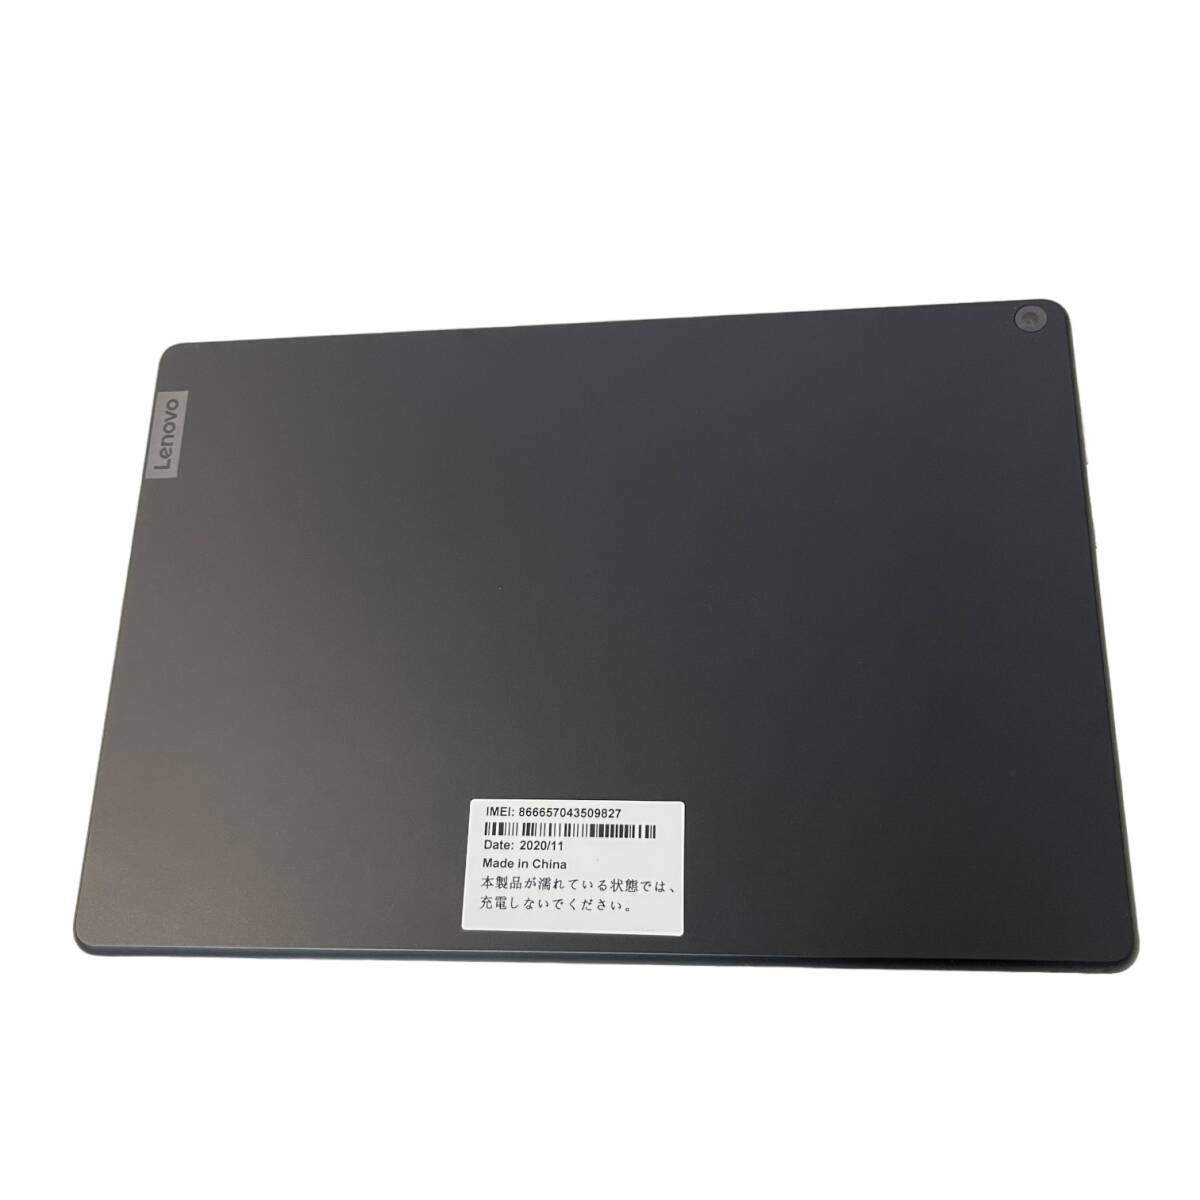 【中古品】初期化済 Lenovo TAB5 801LV ブラック タブレット端末 10インチ ソフトバンク 判定:〇 箱無し タブレットケース付 L61223RL_画像4